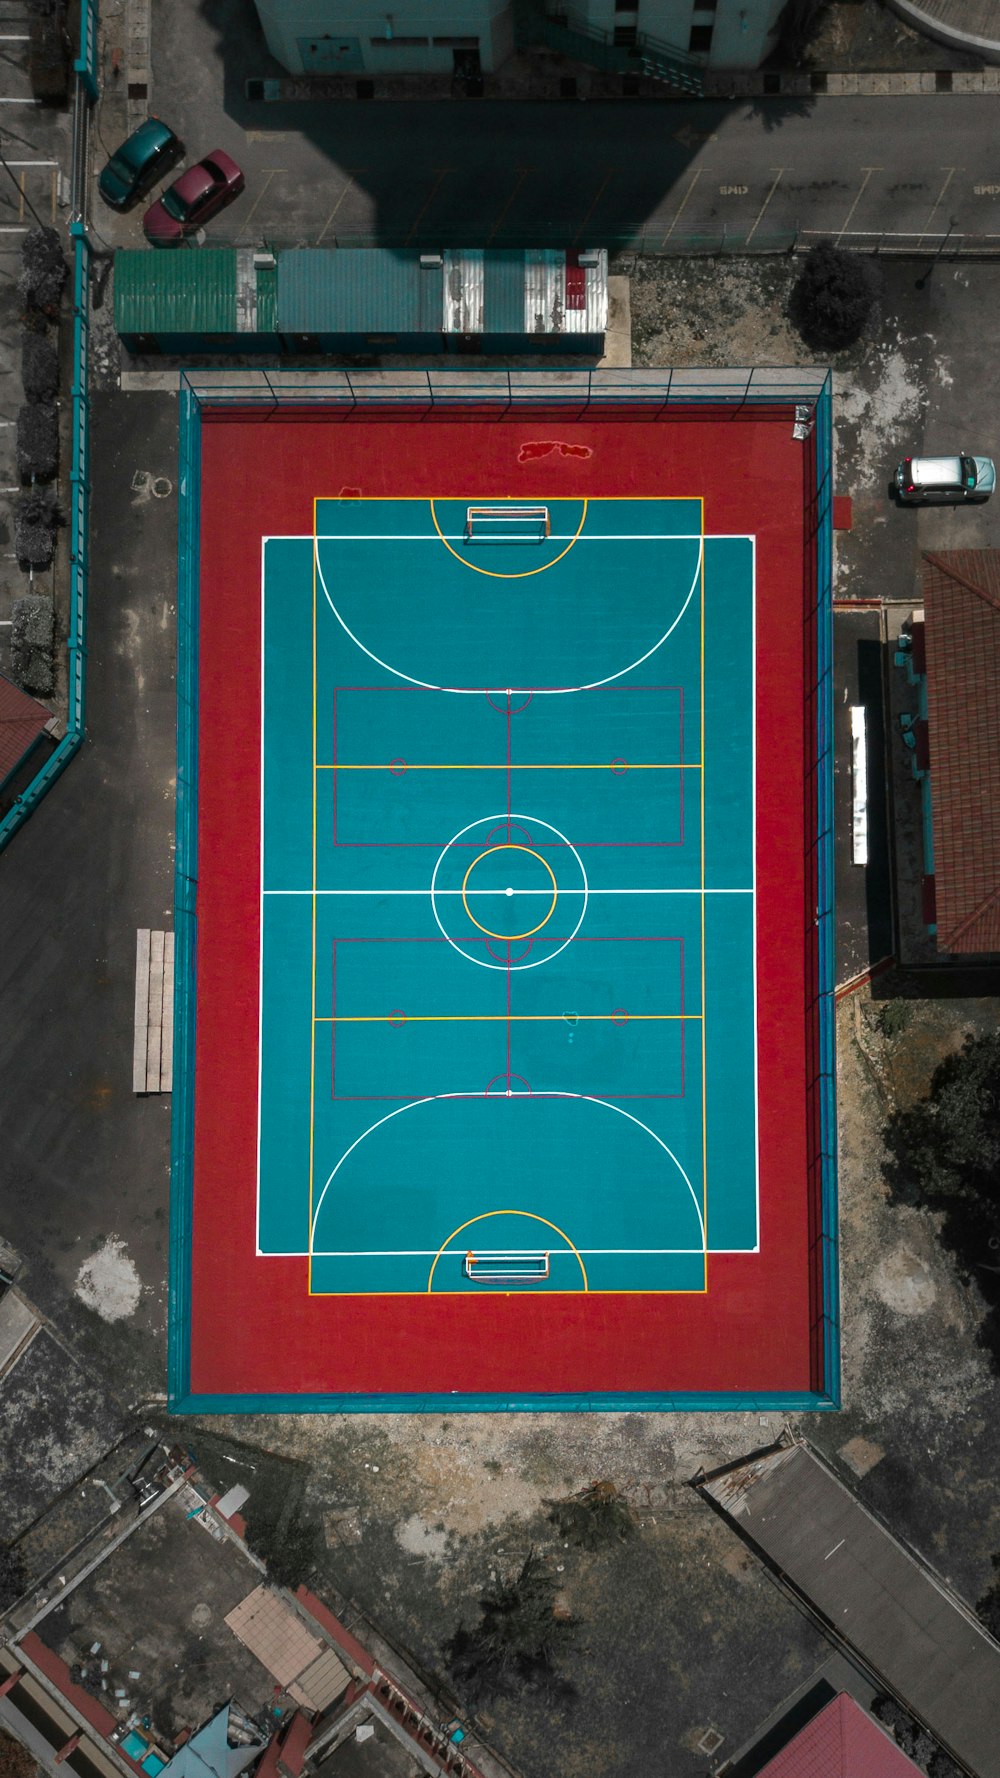 Vista aérea do campo de futebol